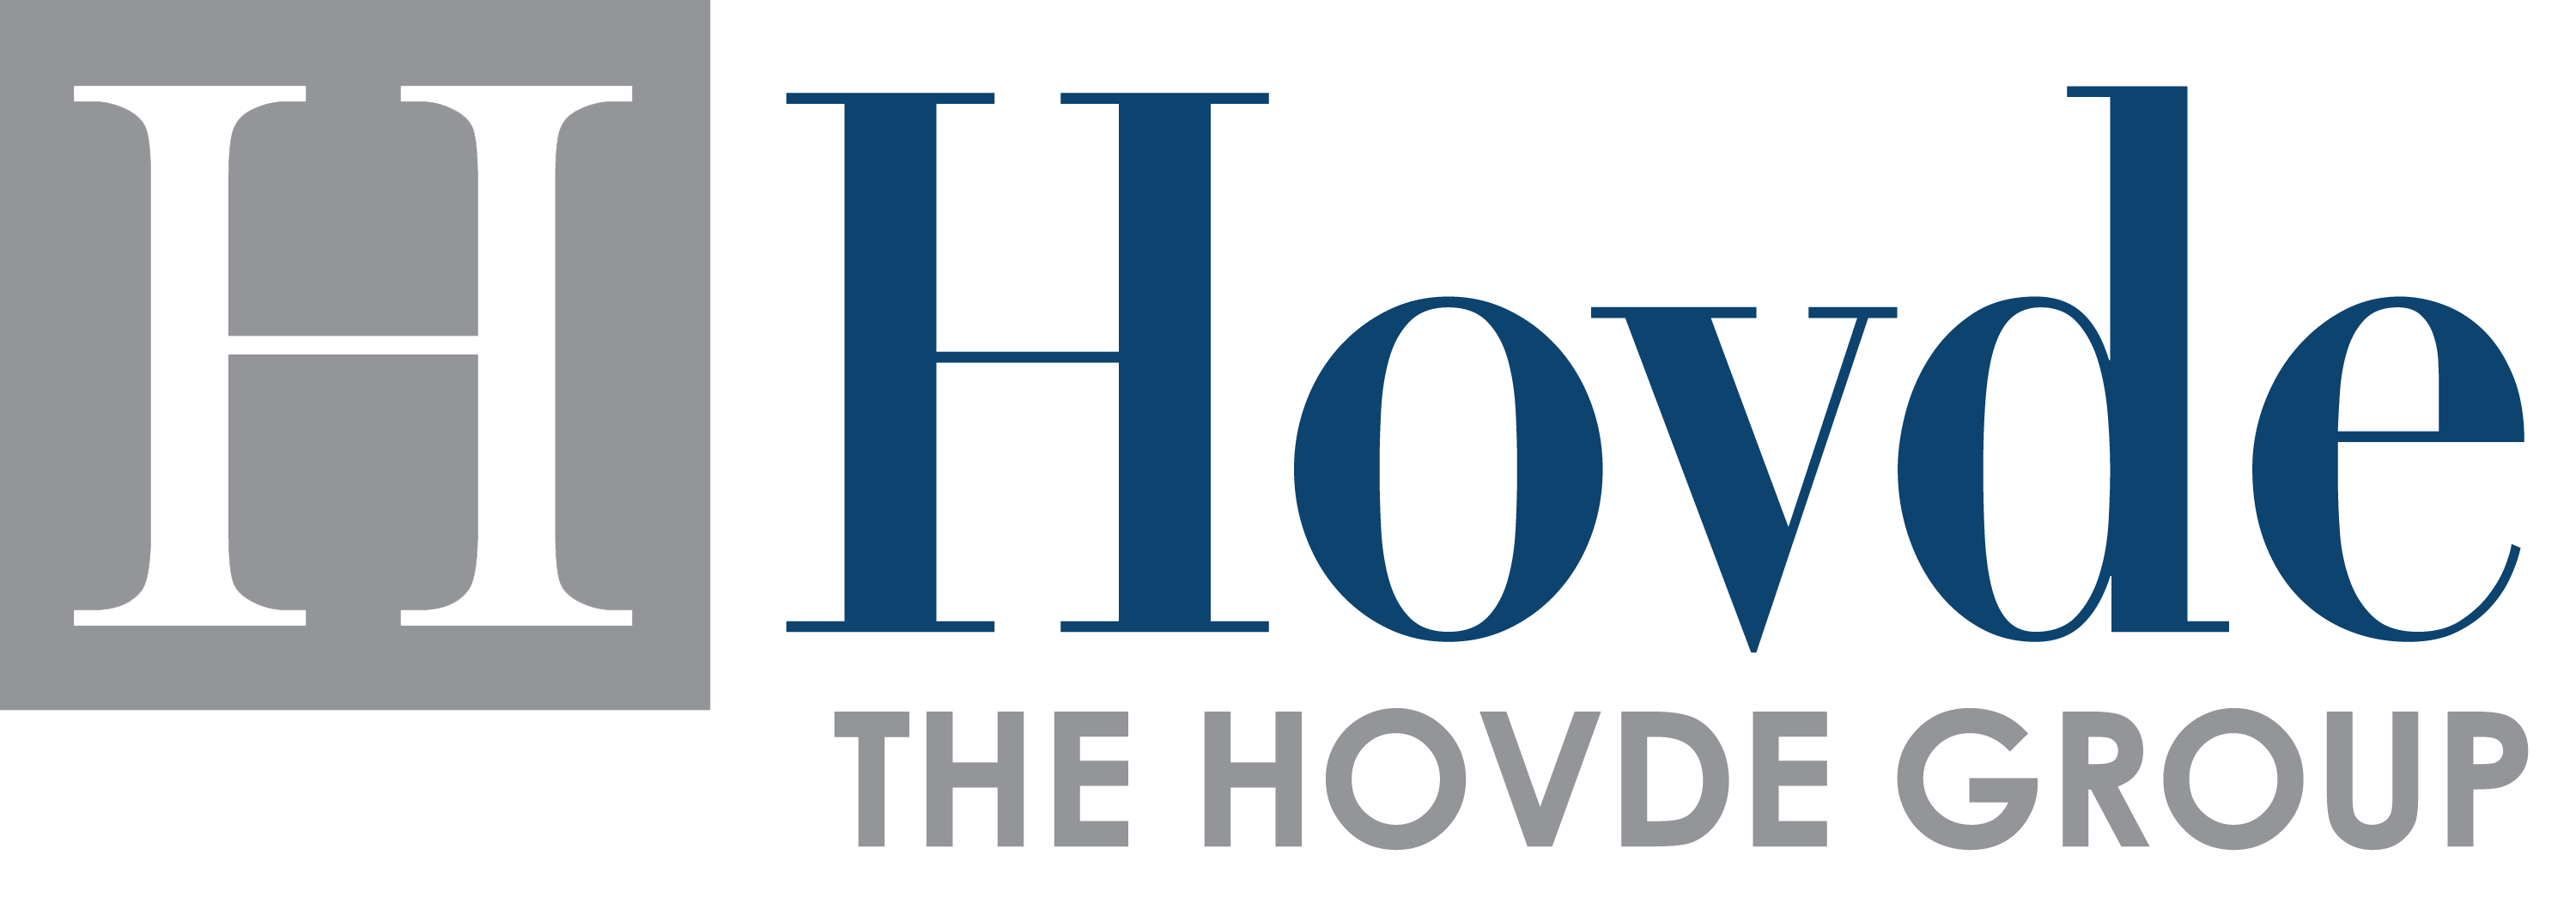 Hovde_Logo.png